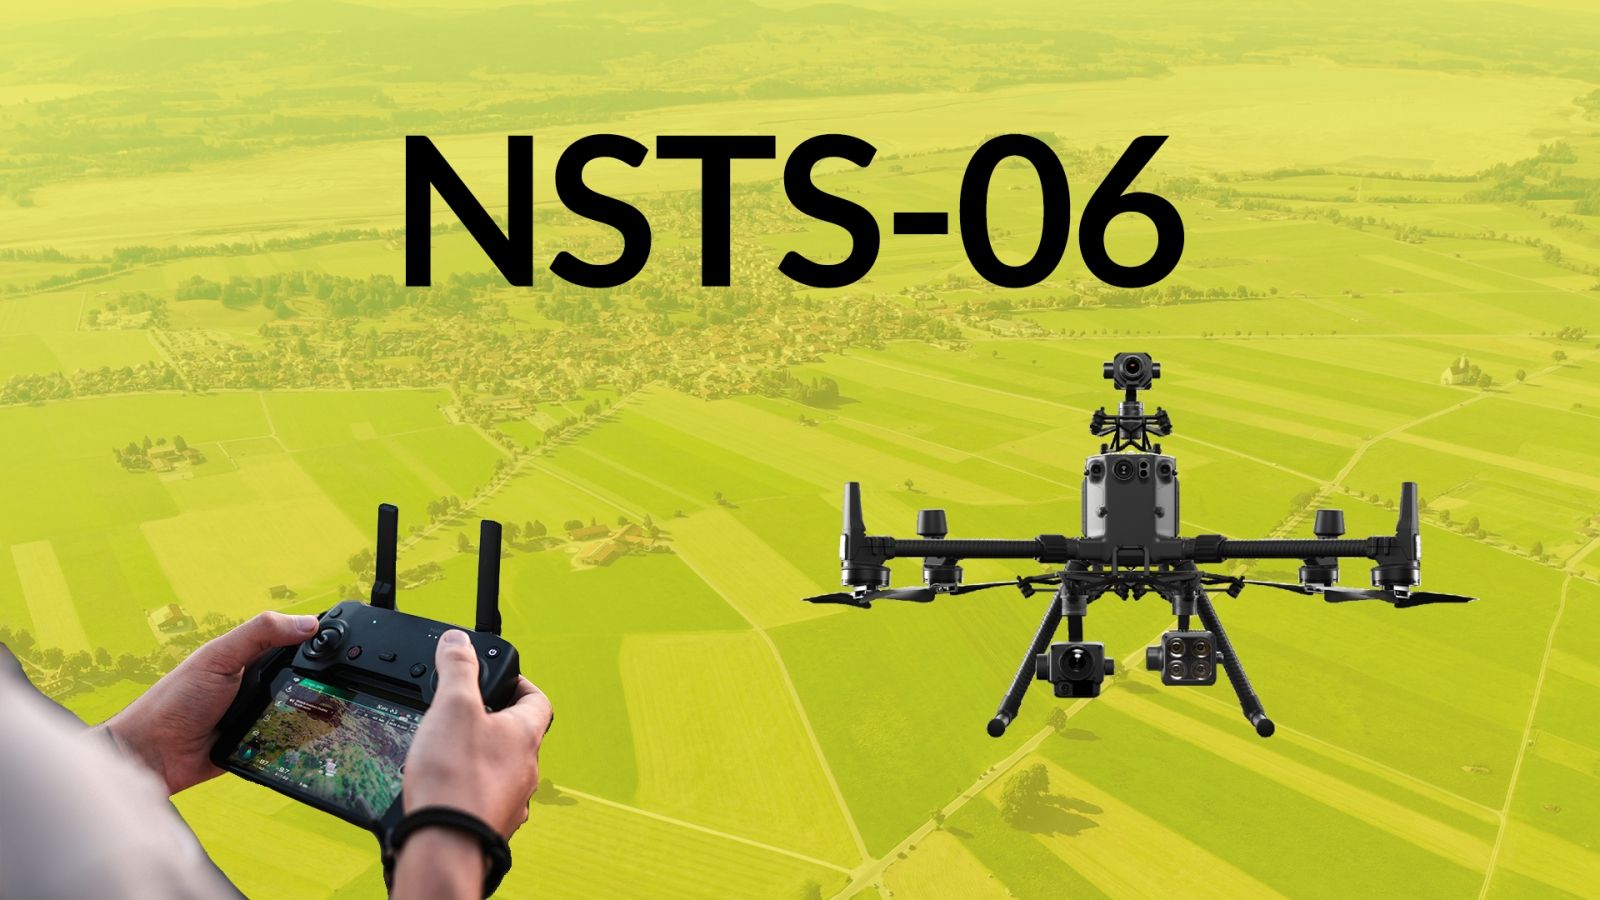 dron.edu Szkolenie NSTS-06 - kurs latania dronem 5947996